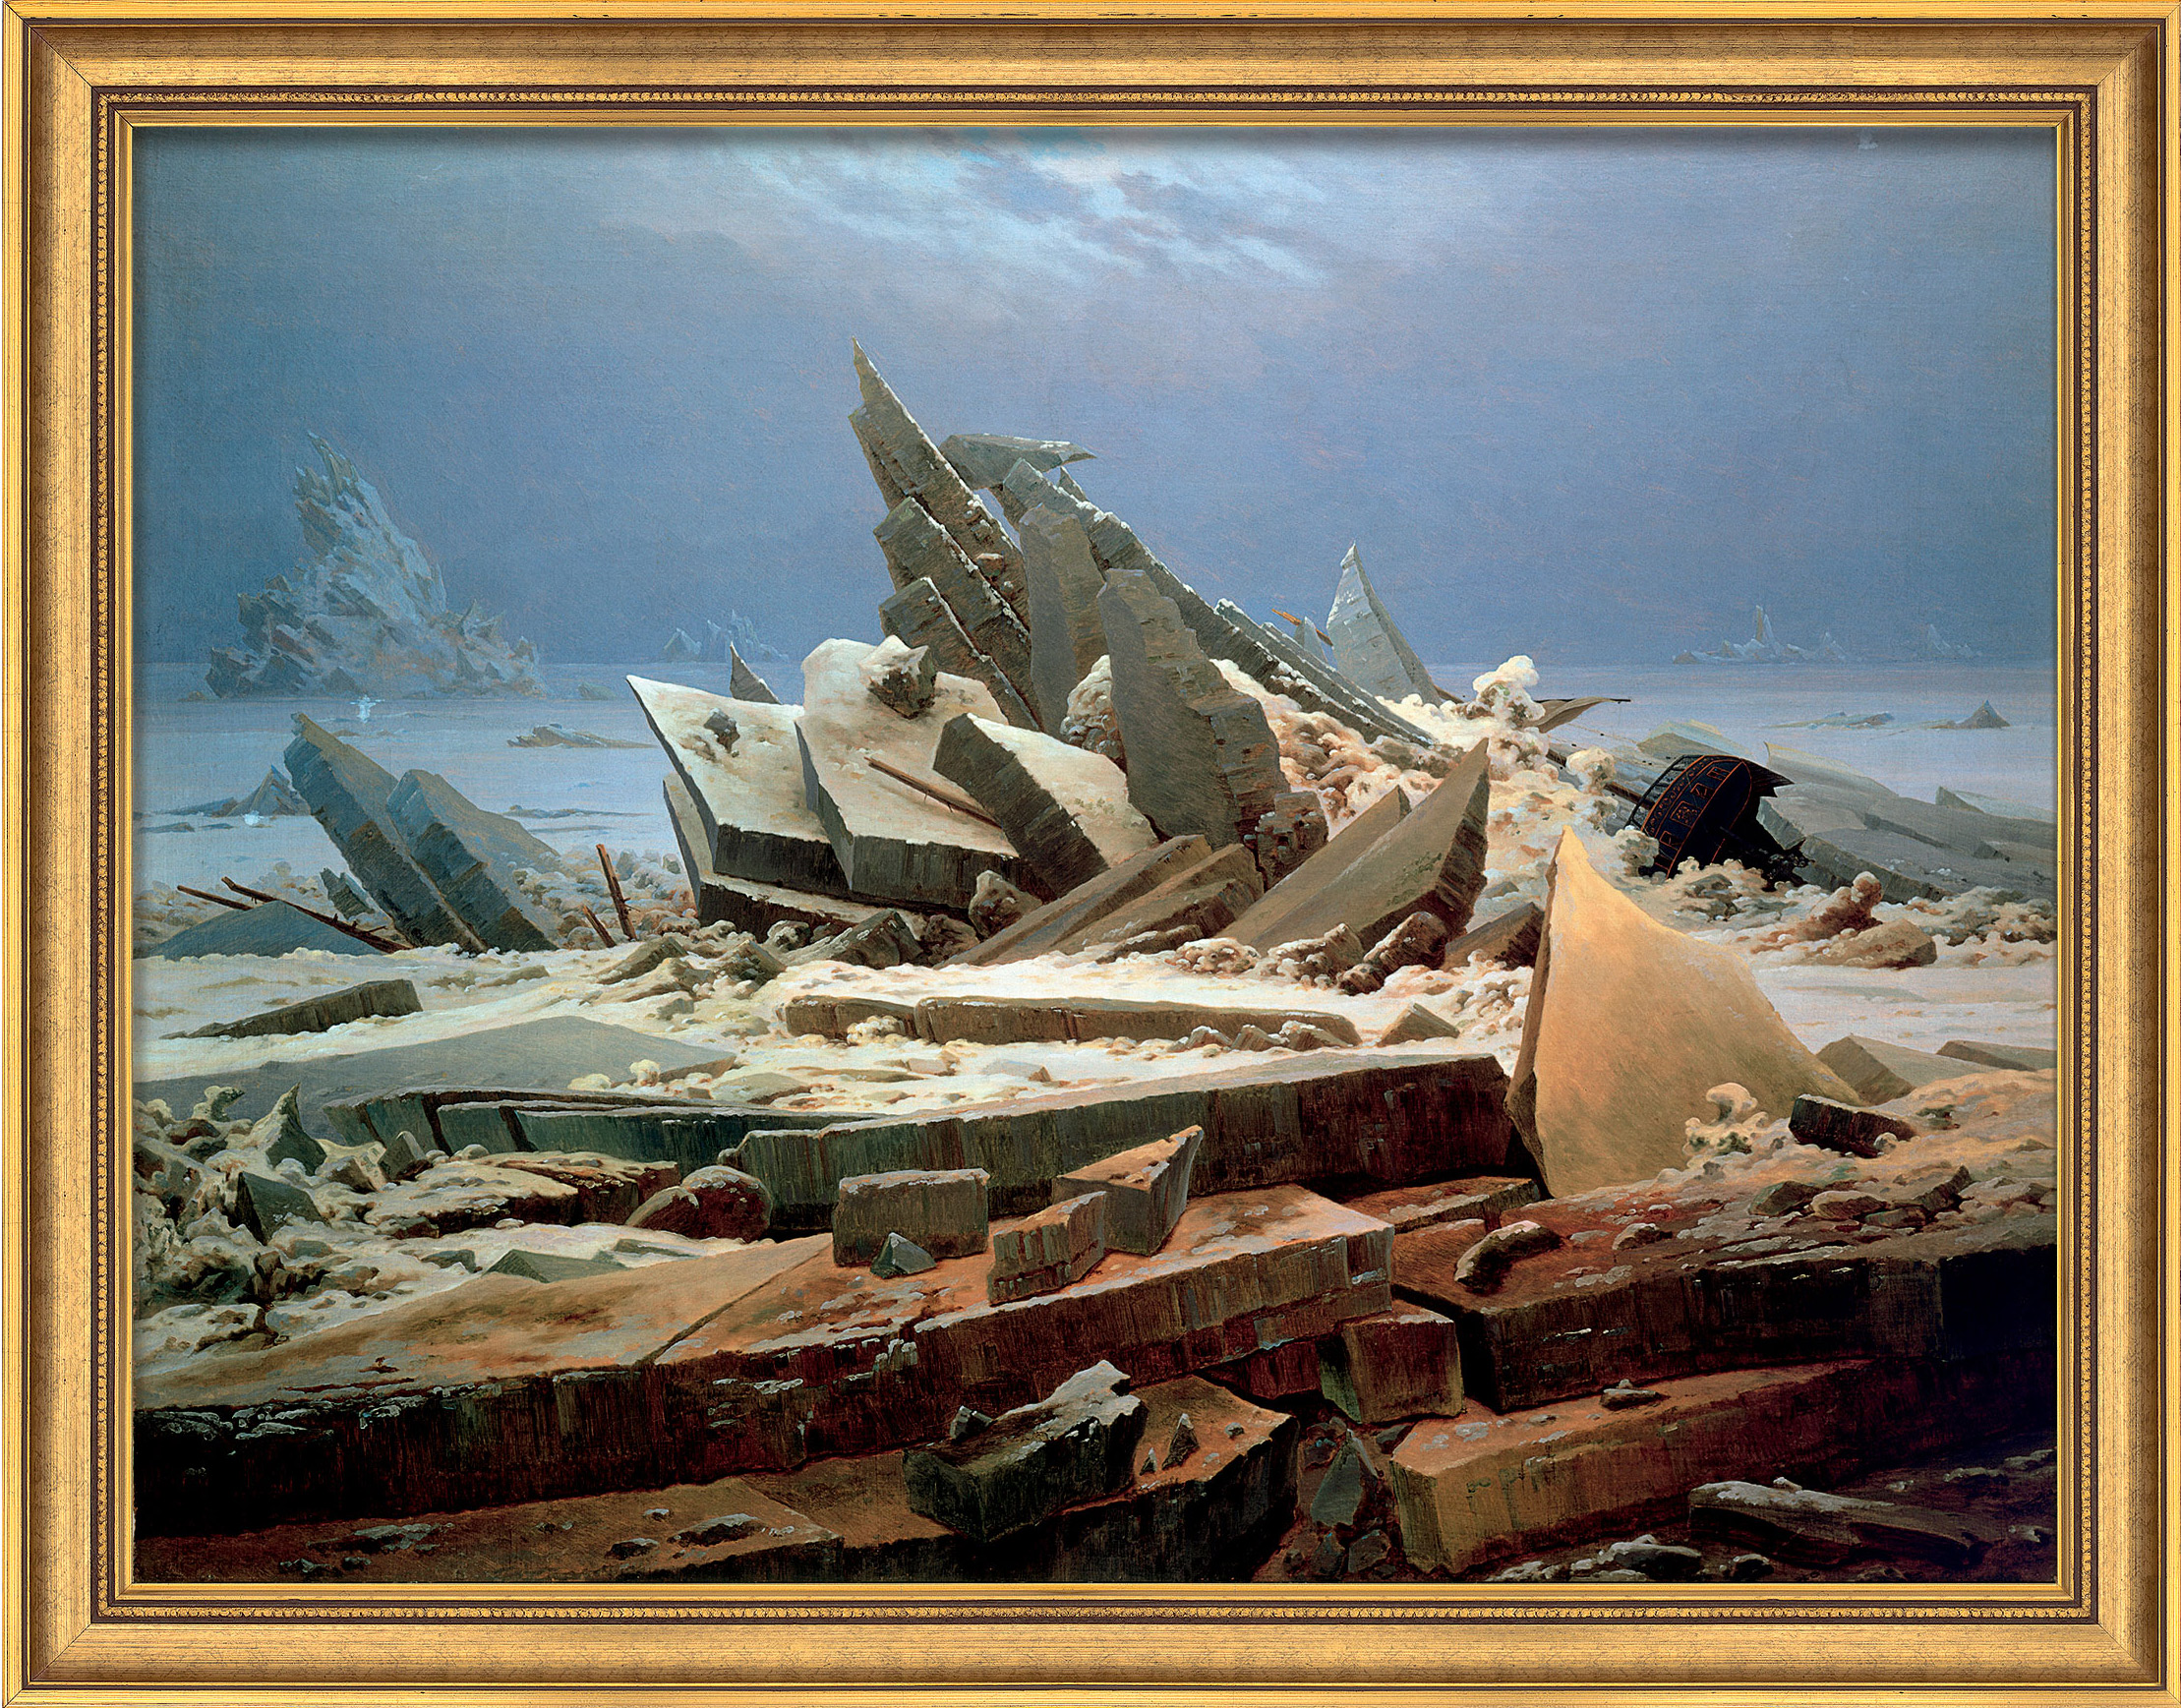 Caspar David Friedrich: Bild 'Das Eismeer' (1824), gerahmt